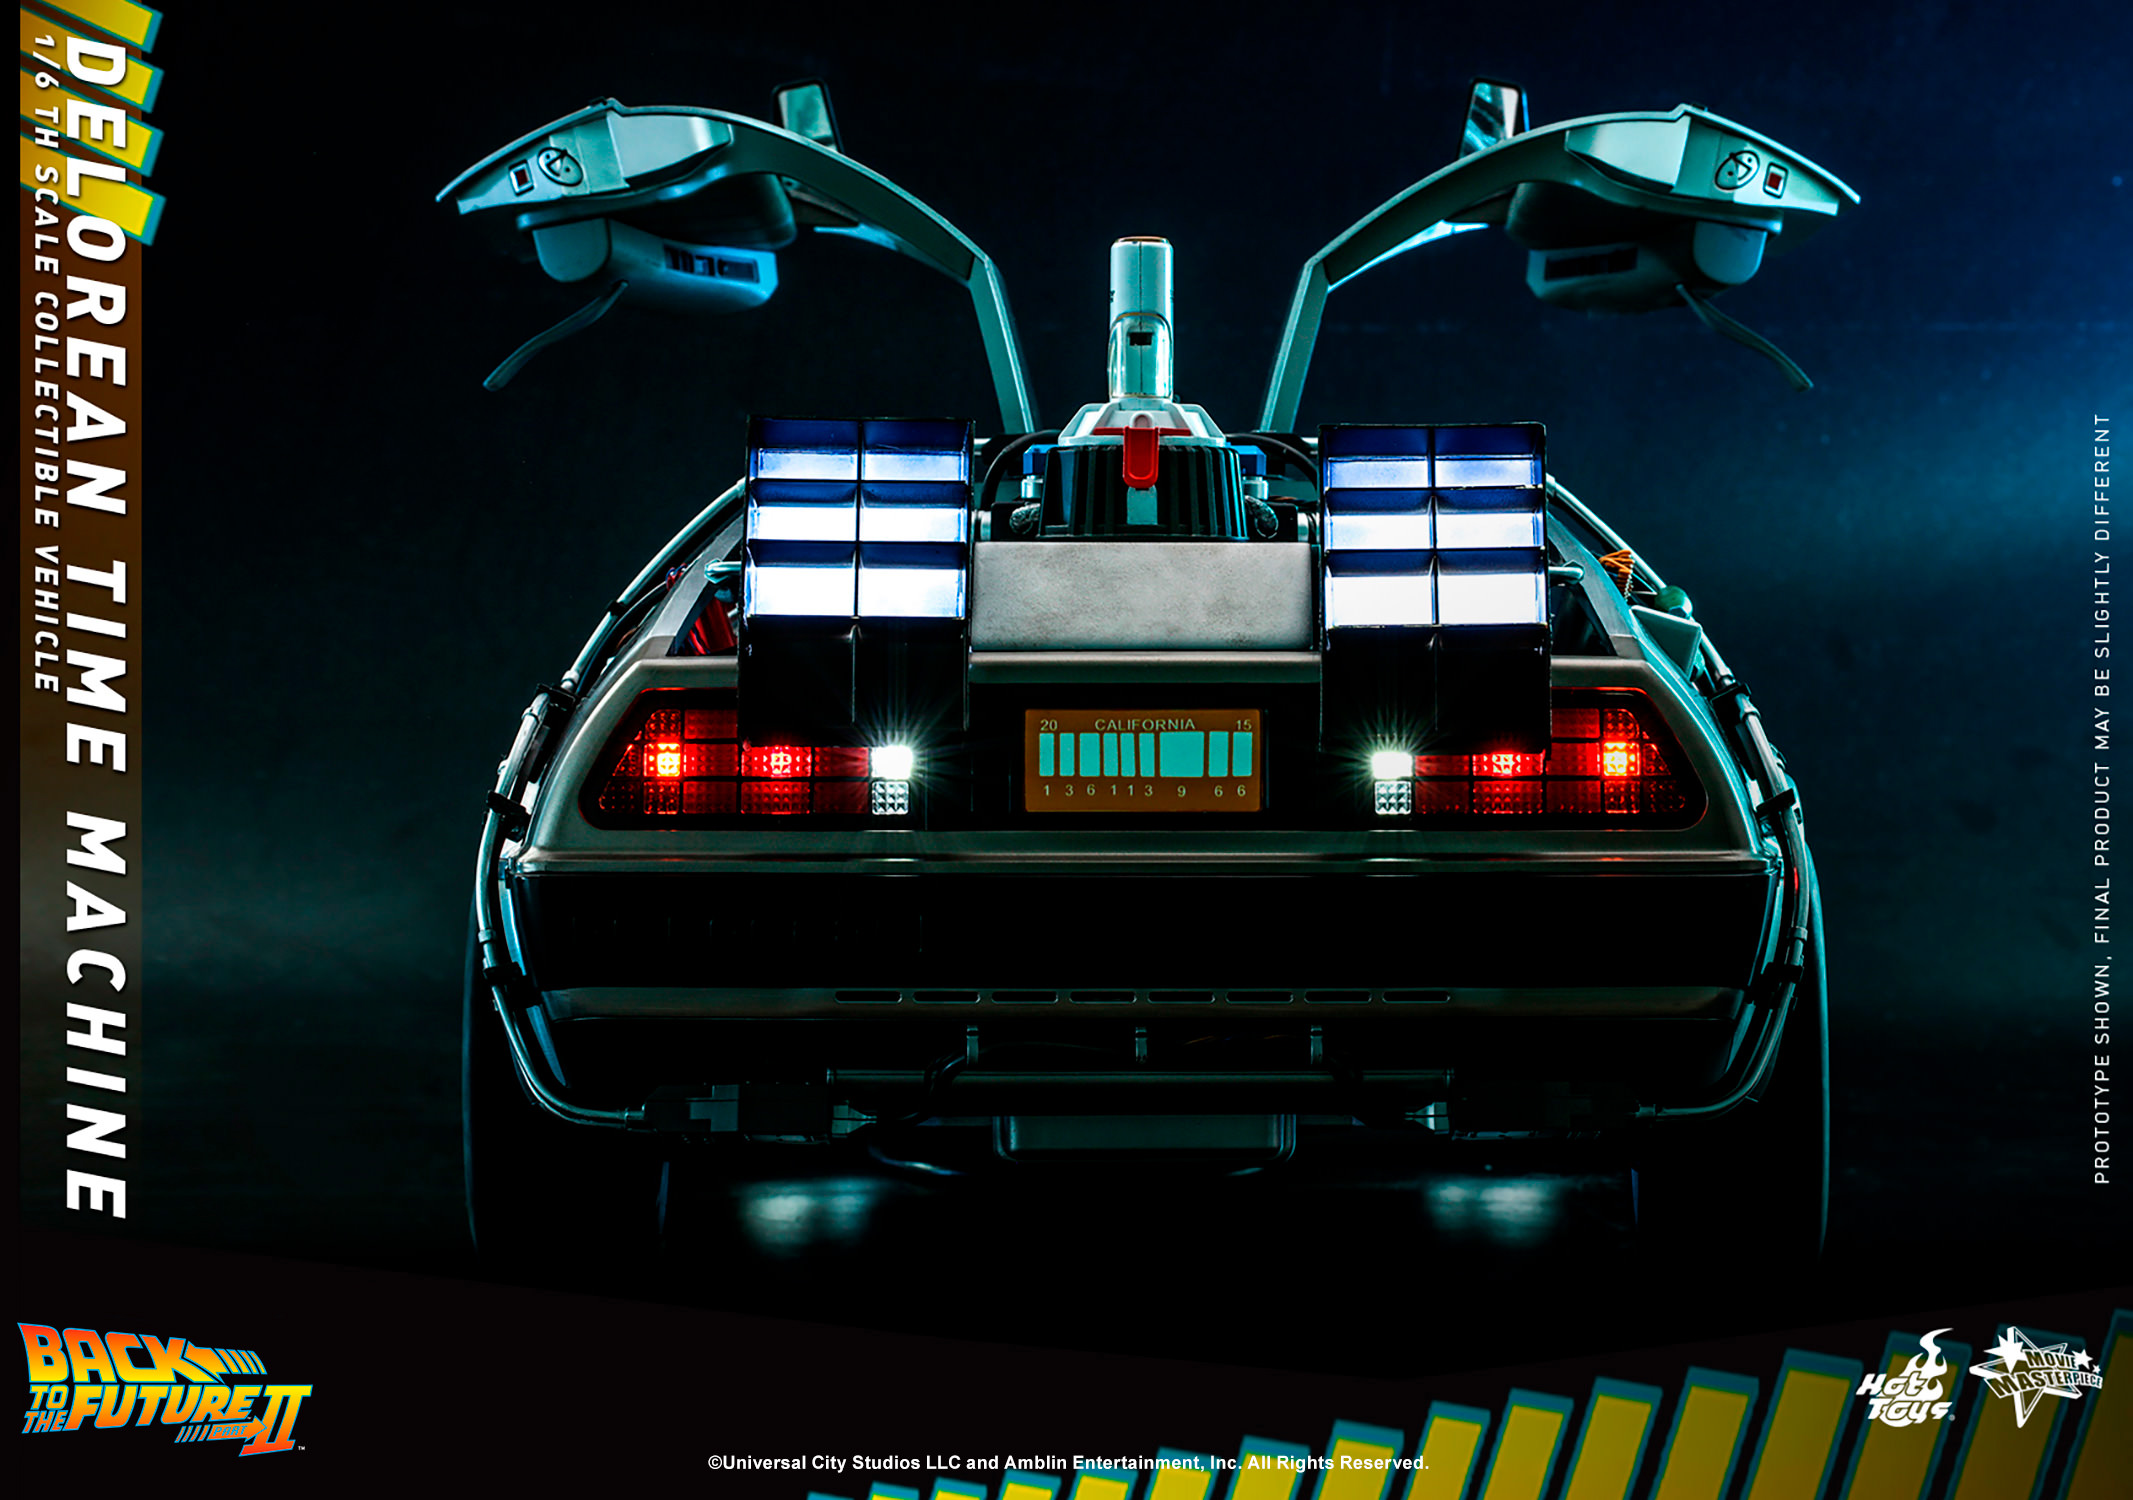 DeLorean Time Machine- Prototype Shown